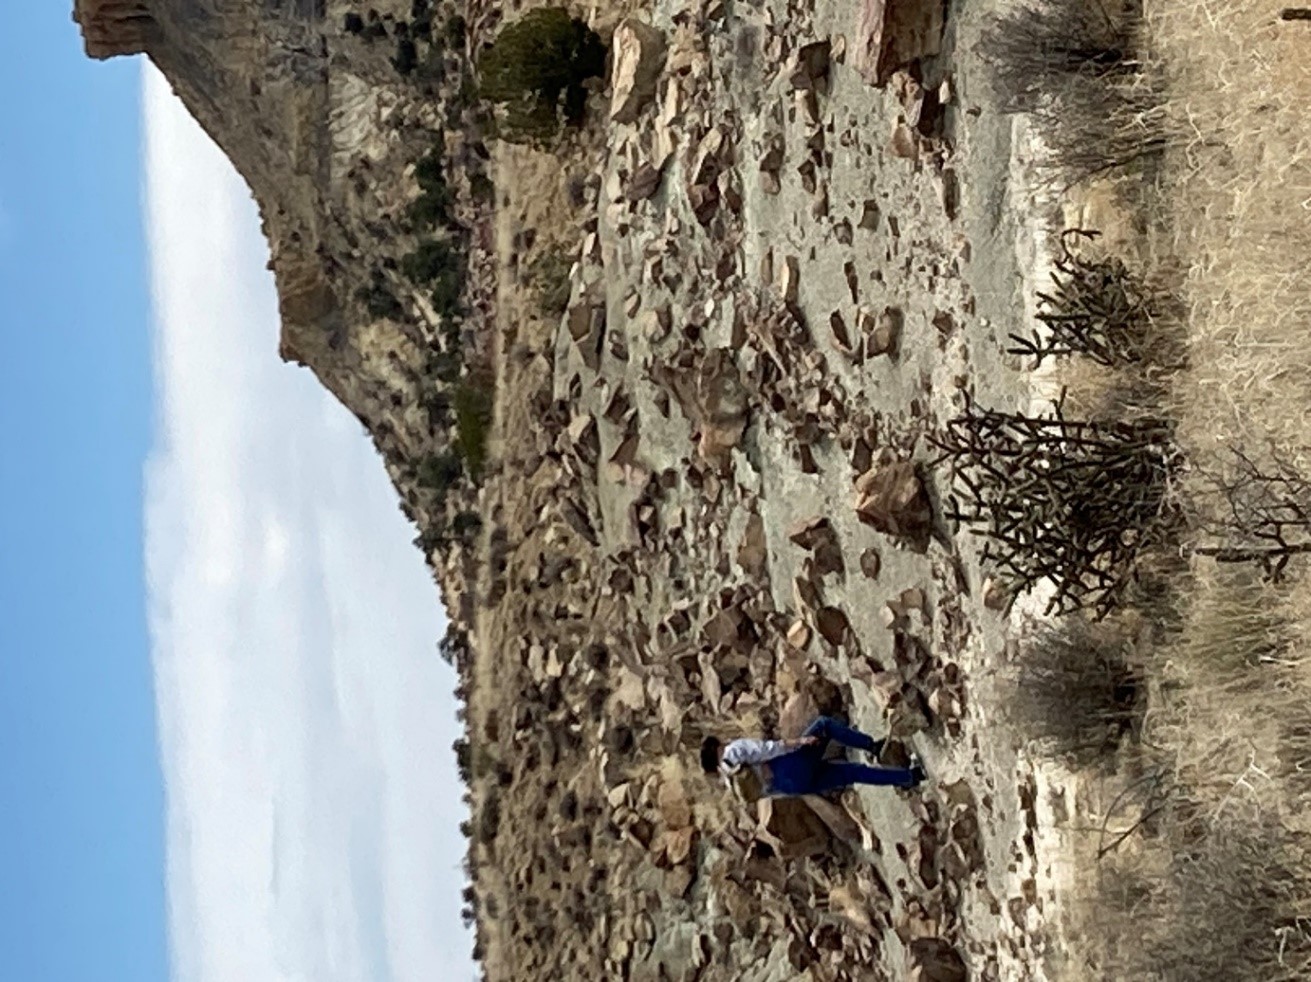 A lone hiker walking on a rocky landscape